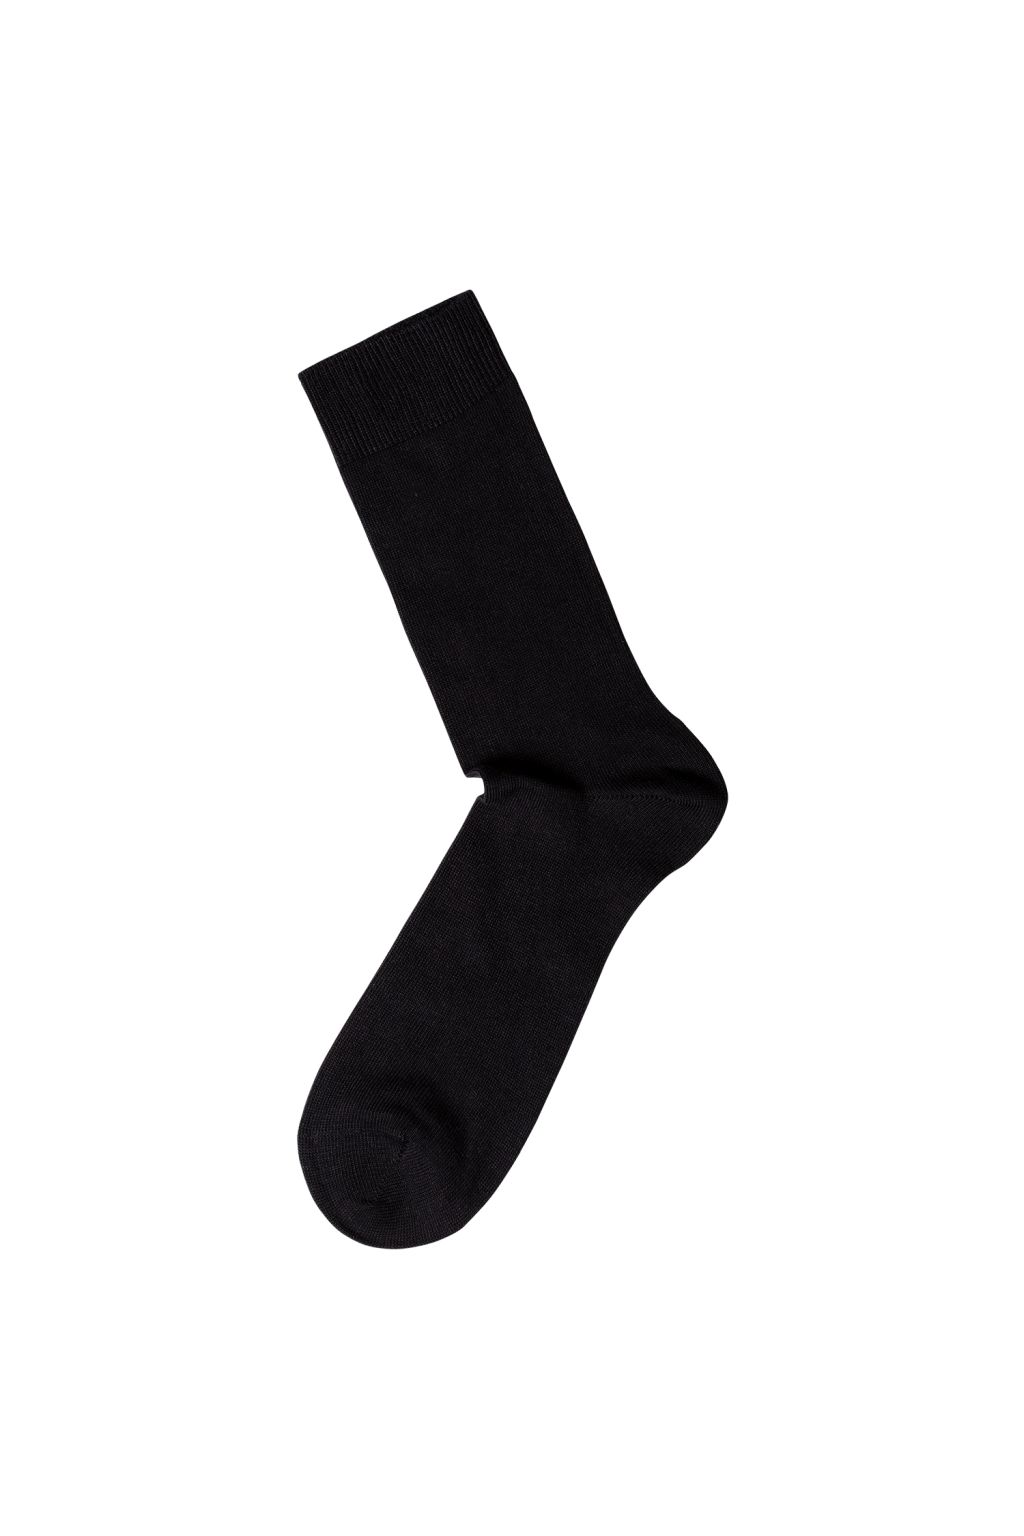 Organic Plain Cotton Socks Black 35/38